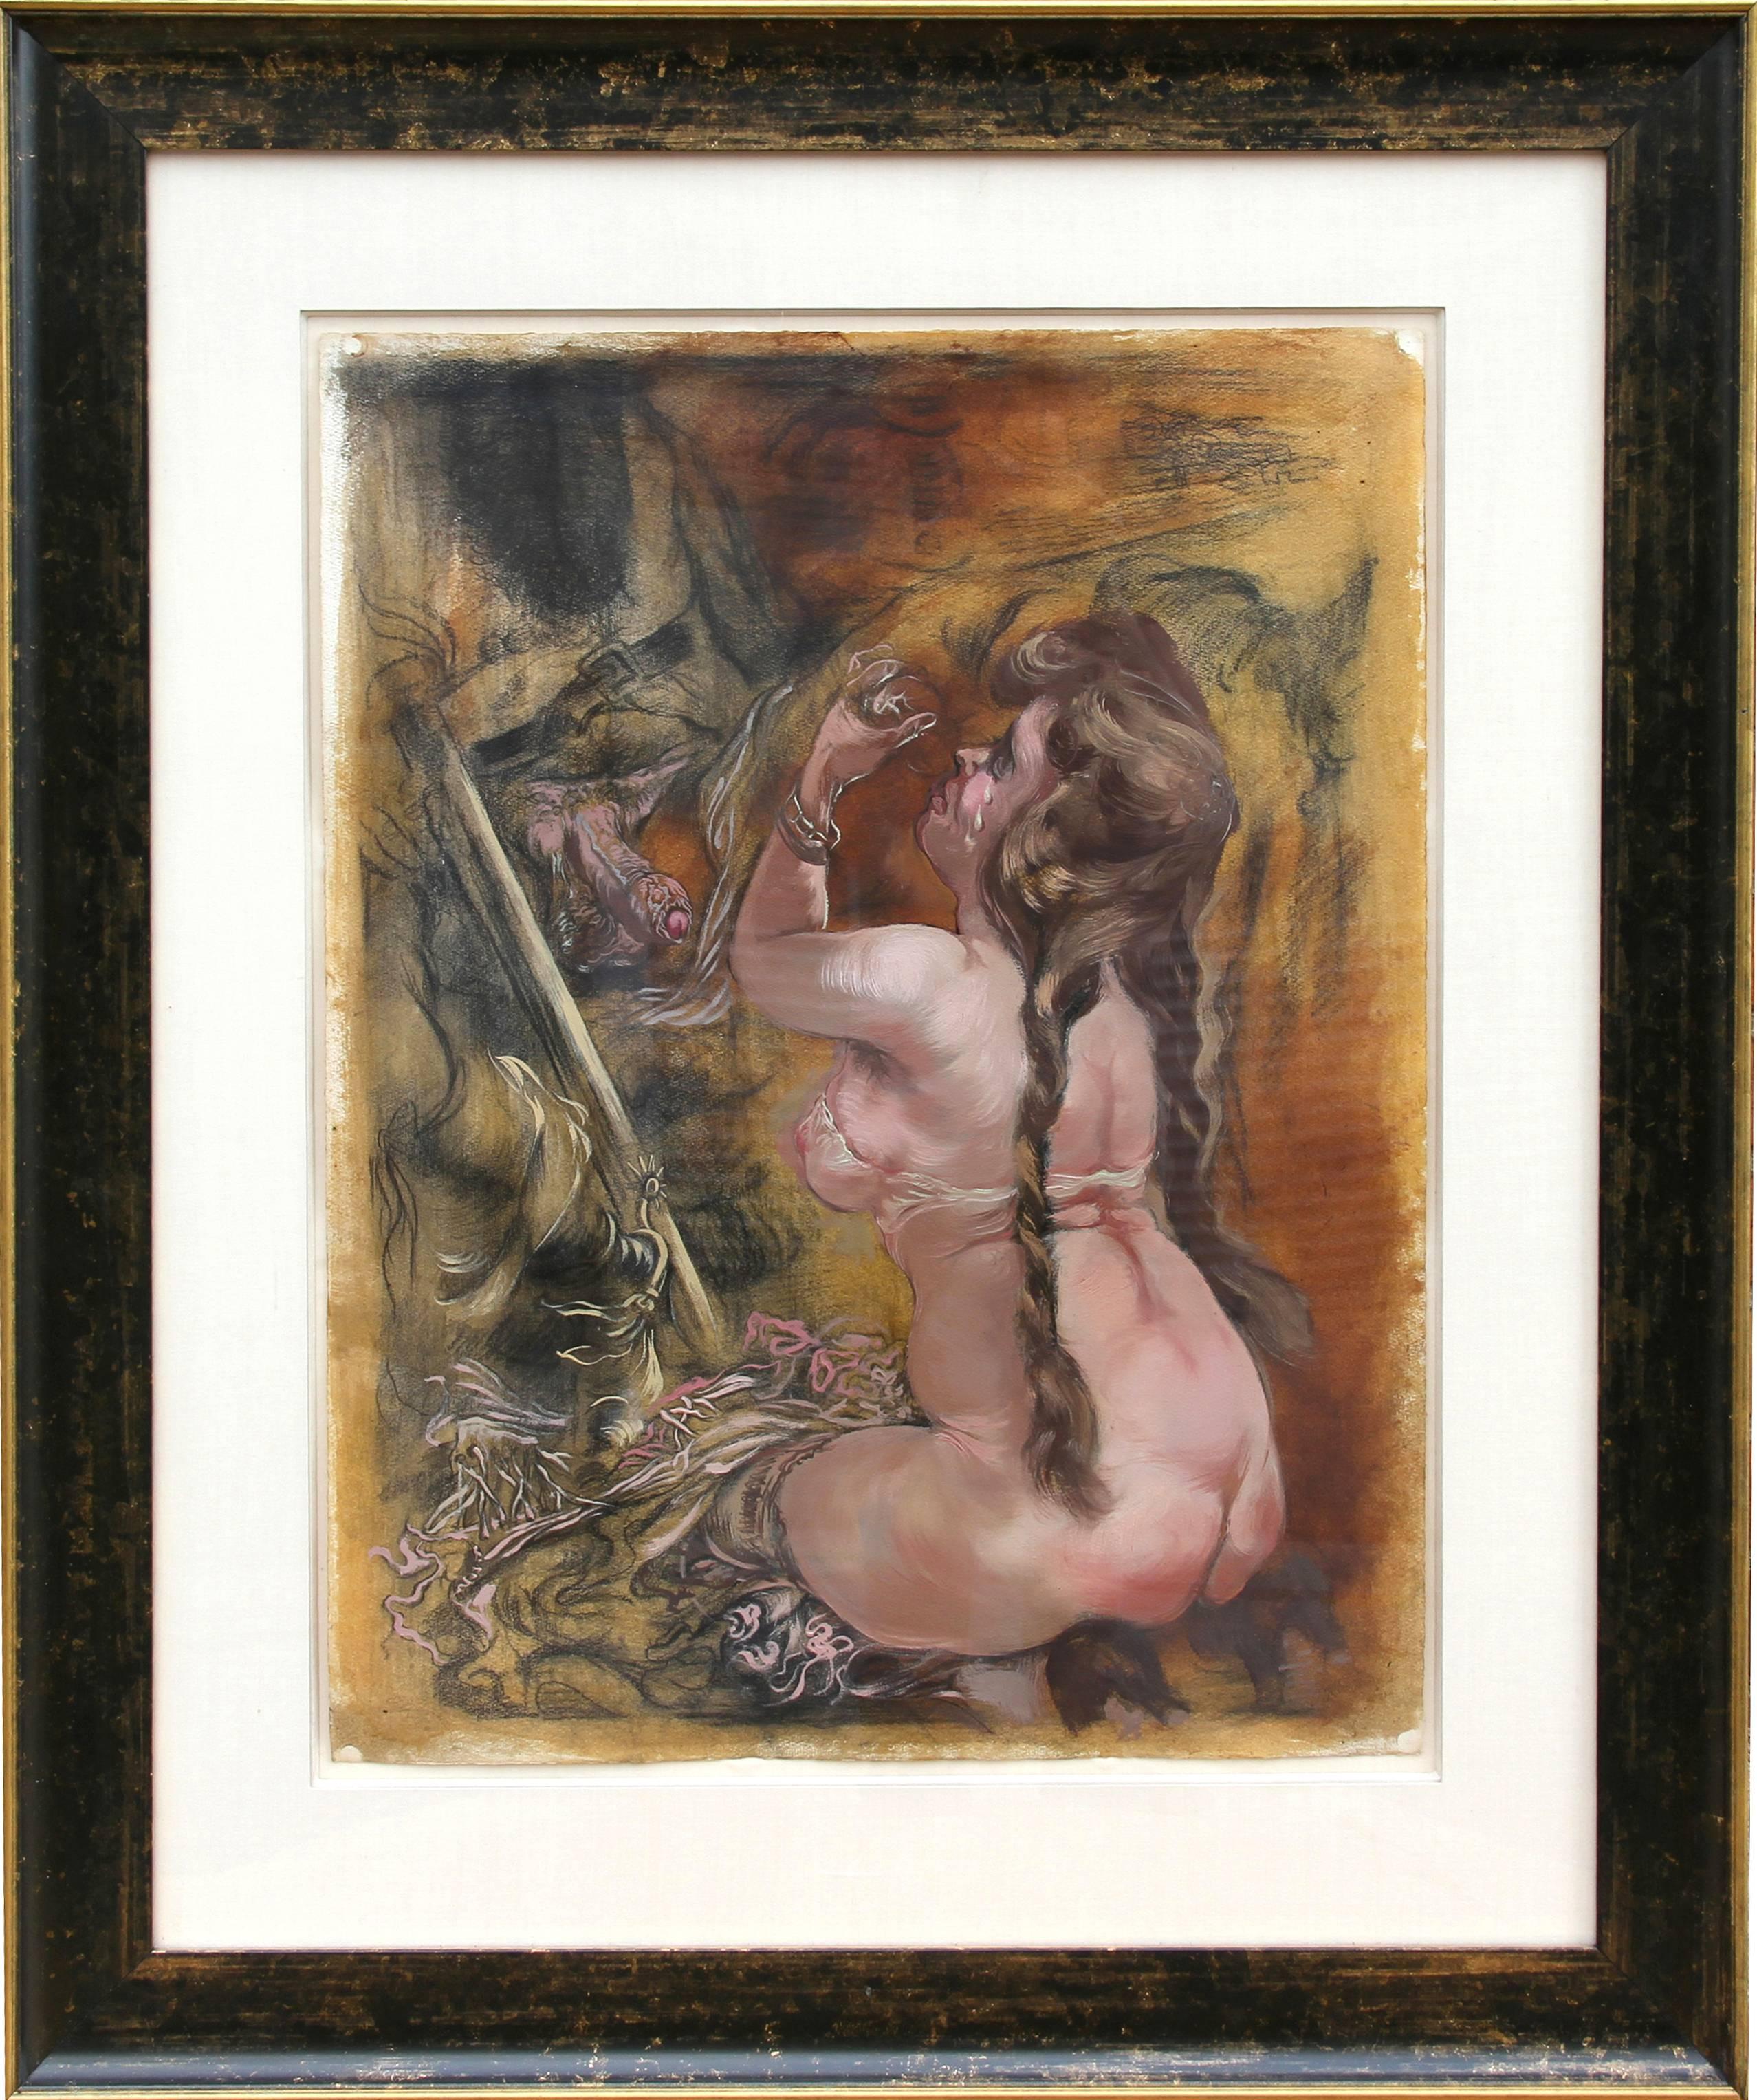 Künstler:	George Grosz, Deutscher (1893 - 1959)
Titel: Erregt	
Jahr: 1940 
Medium: Öl auf Papier, signiert v.l.n.r.
Papierformat: 24 x 18 Zoll (60,96 x 45,72 cm)
Rahmengröße: 36 x 30 Zoll 

Provenienz: Nachlass des Künstlers 
Nachlassstempel auf der